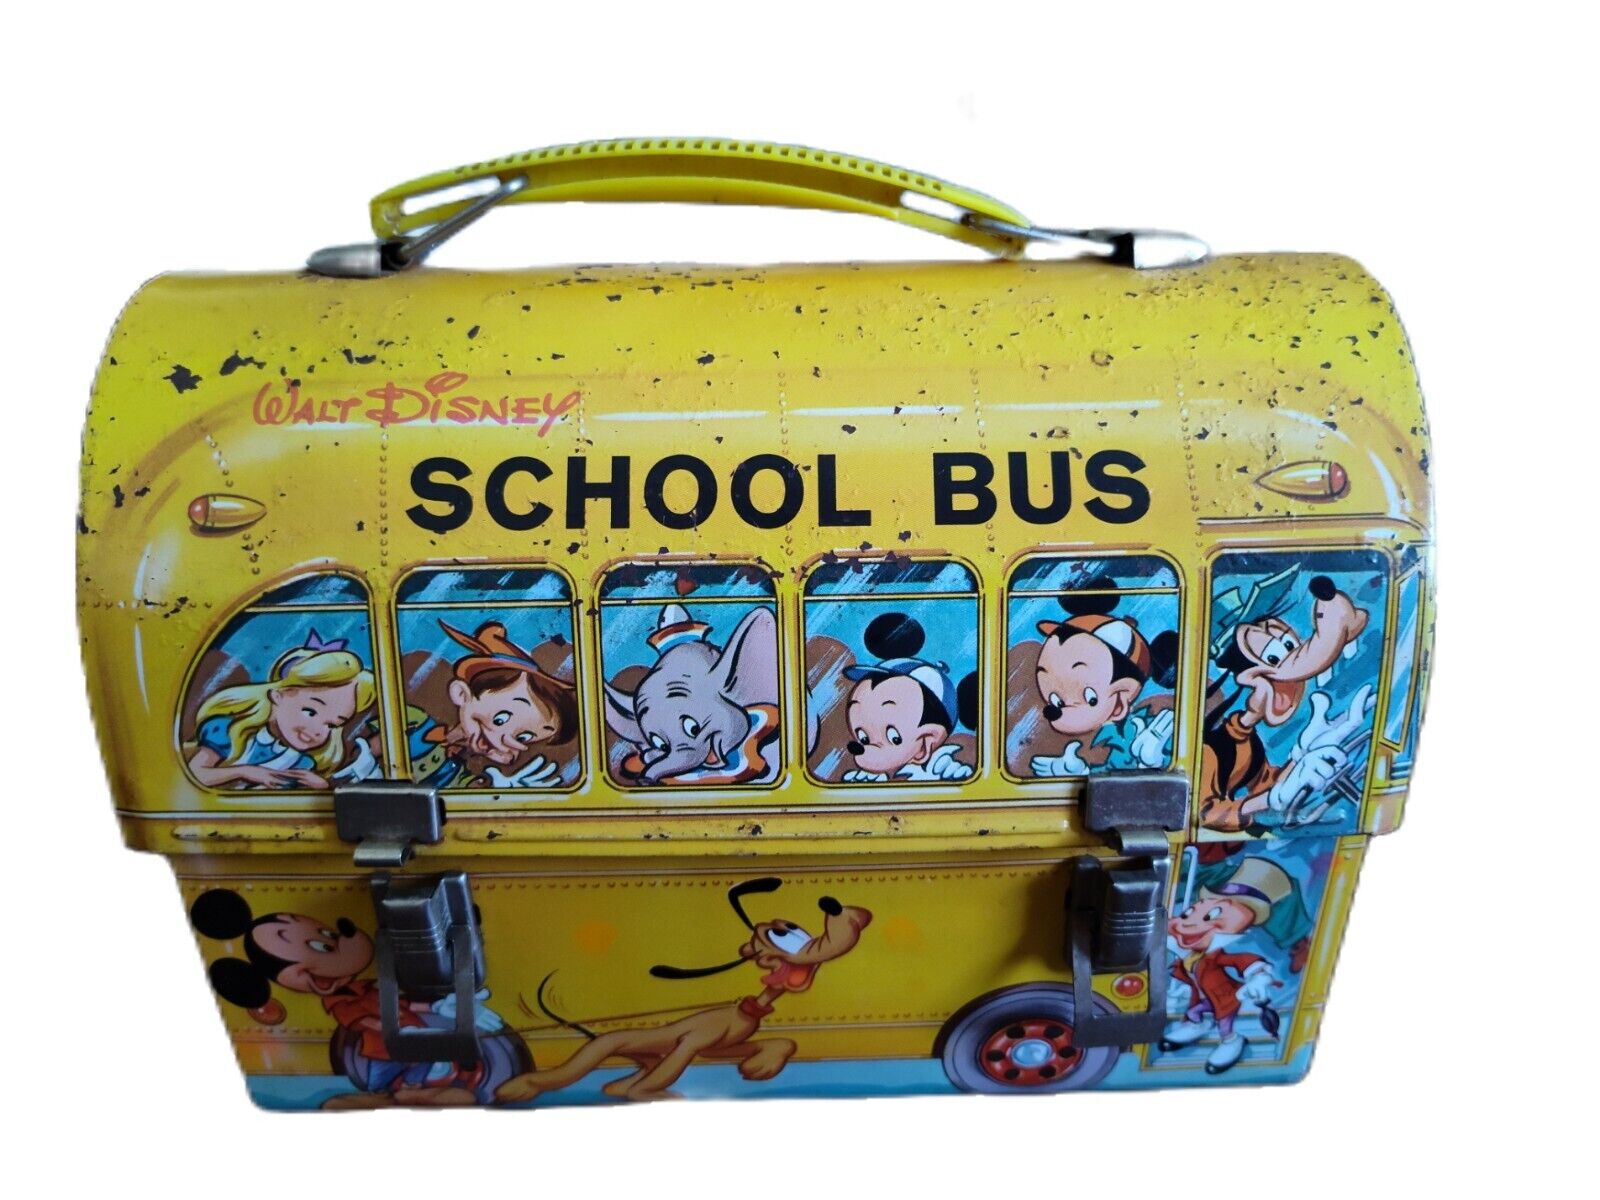 Vintage Walt Disney School Bus Metal Lunch Box - No Thermos With Ticket Book